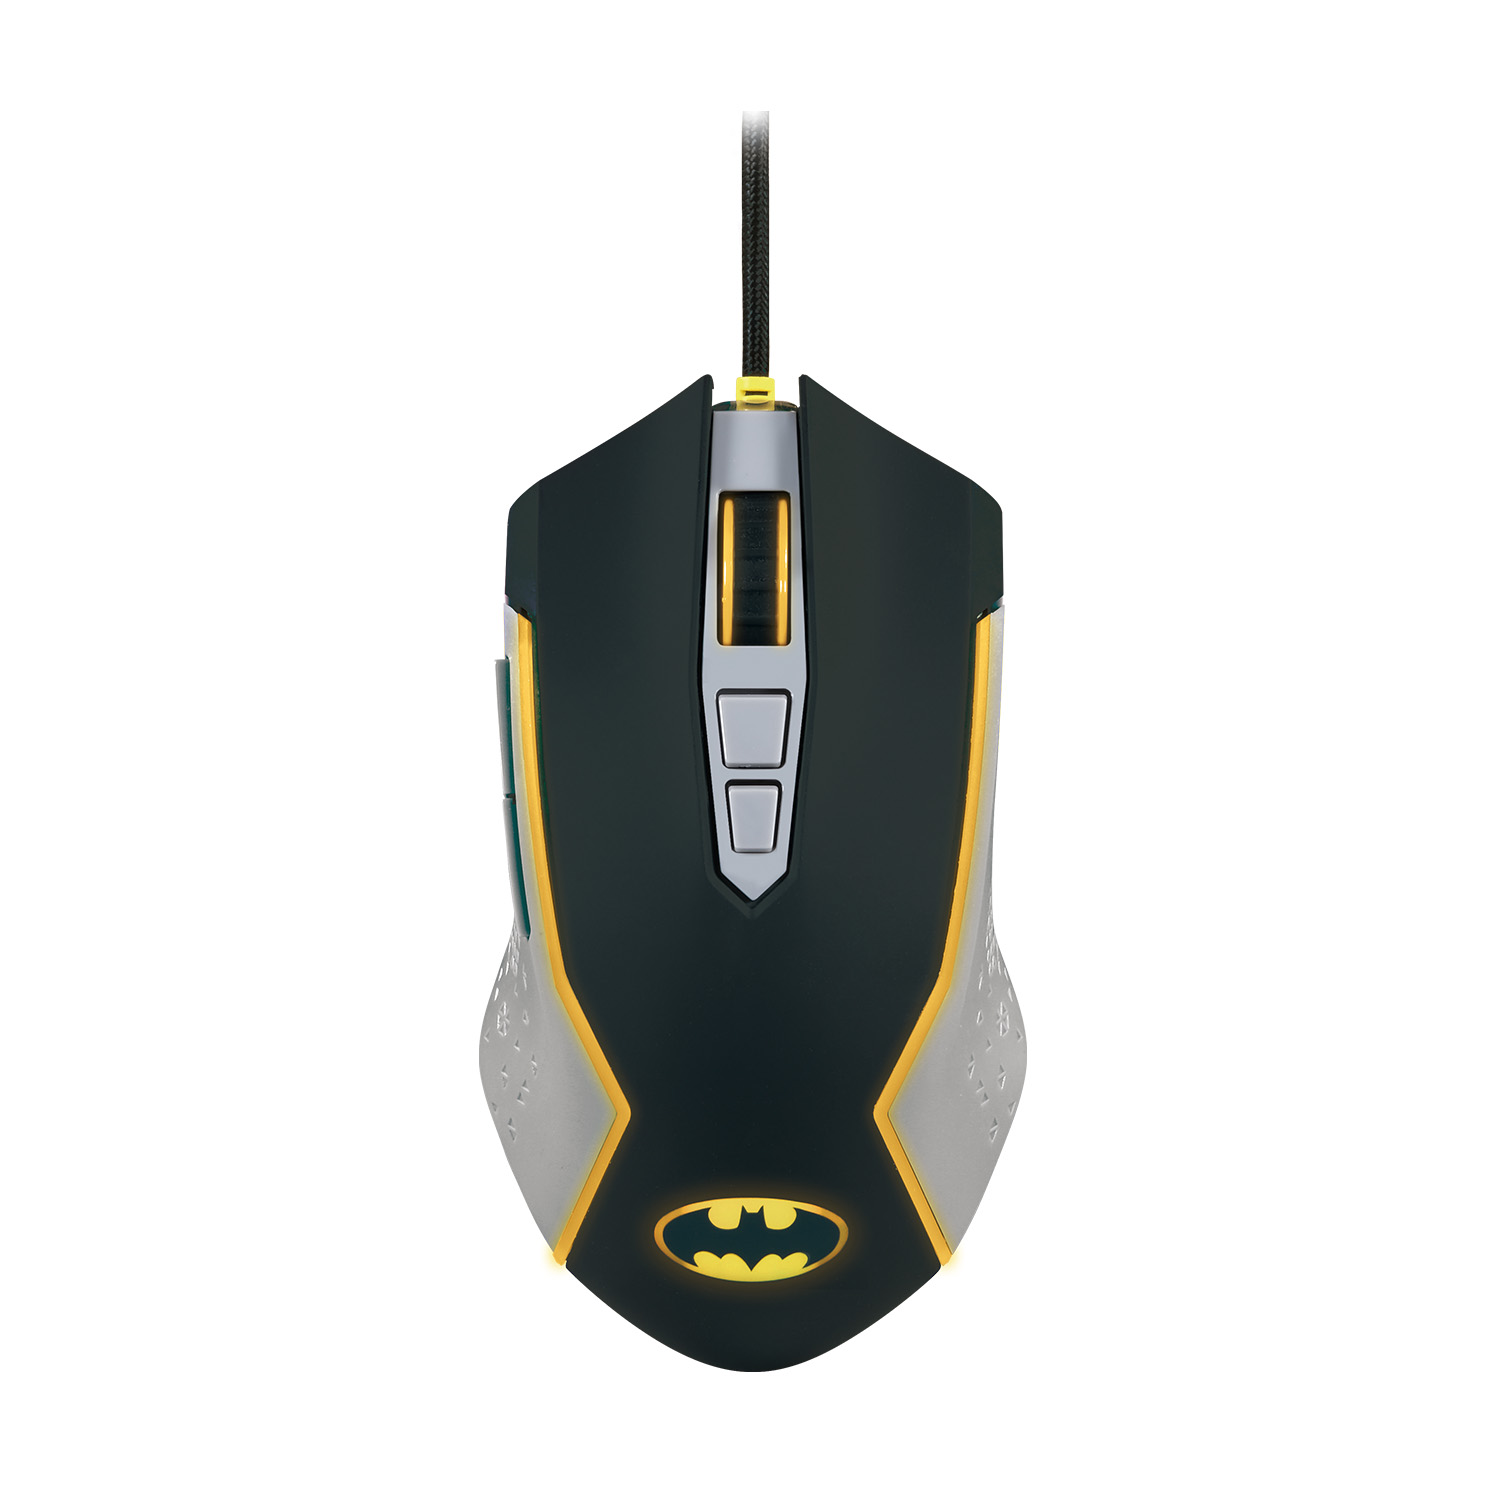 FR-TEC Batman USB Mouse jusqu'à 8000 dpi - Éclairage LED Jaune - Plug and Play - Câble Tressé 1,8 m - Couleur Noir/Gris/Jaune